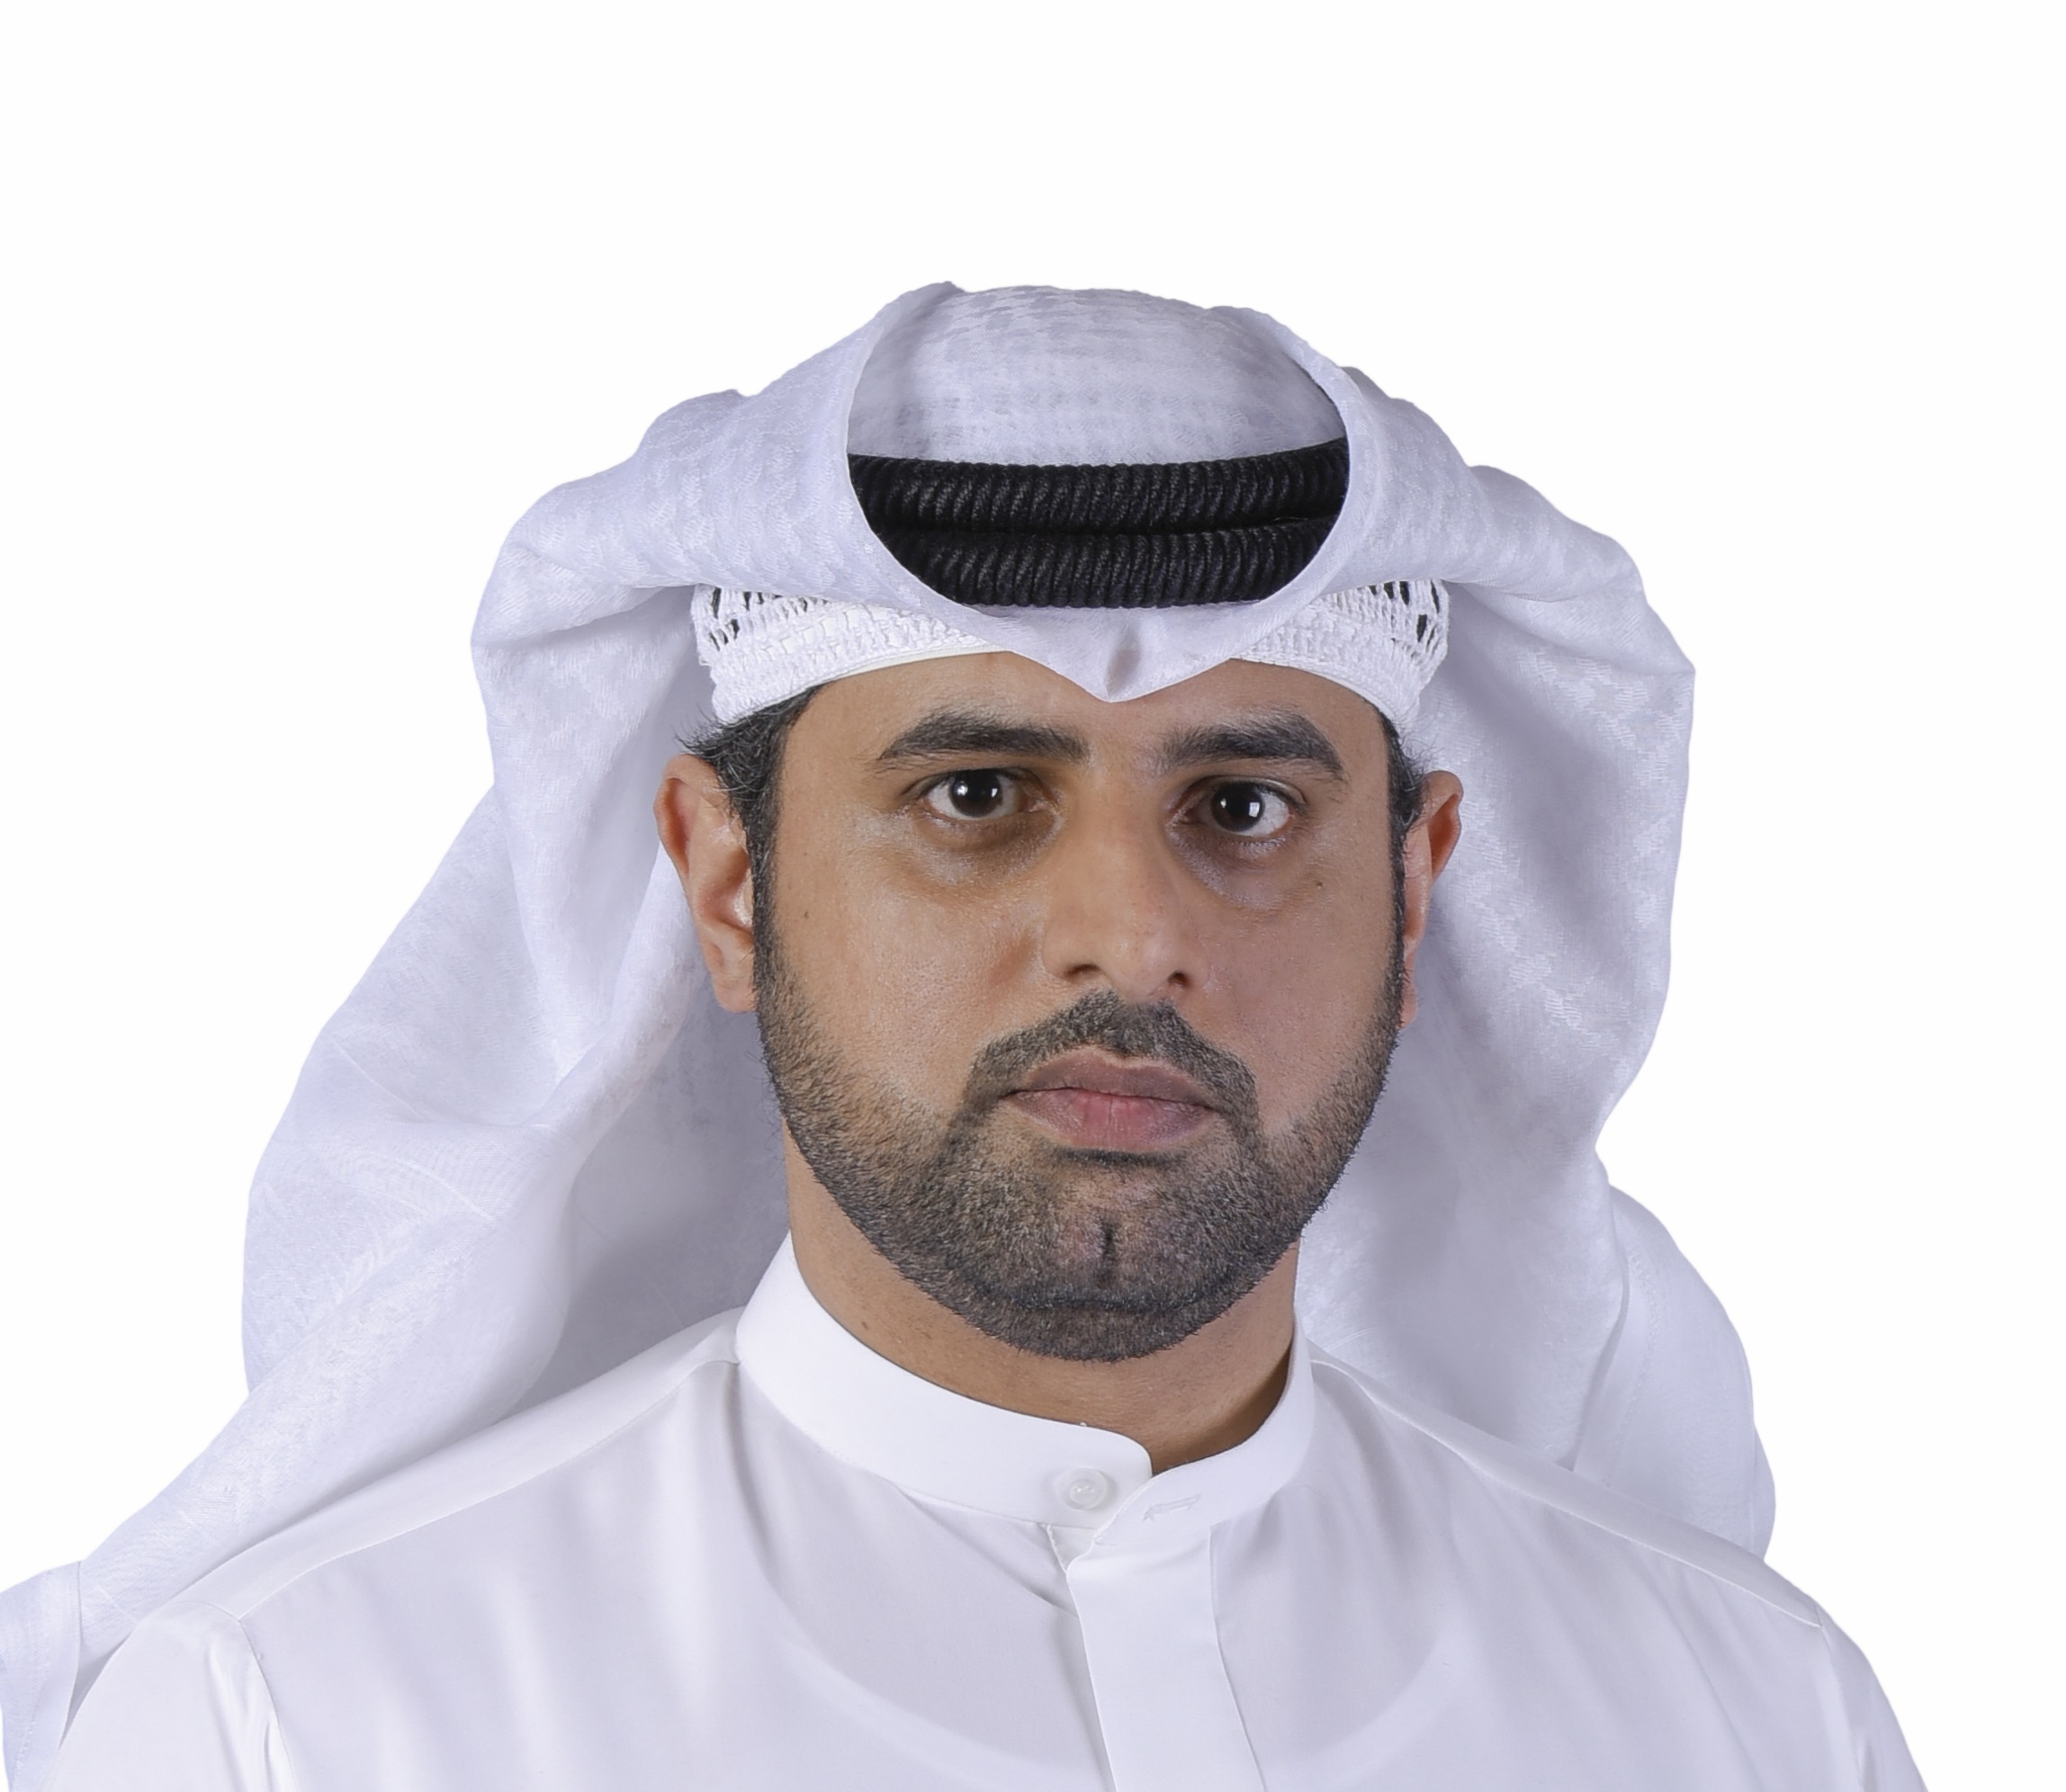 السيد مبارك صالح المنهالي مدير الإدارة الفنية في اتحاد الإمارات للجوجيتسو